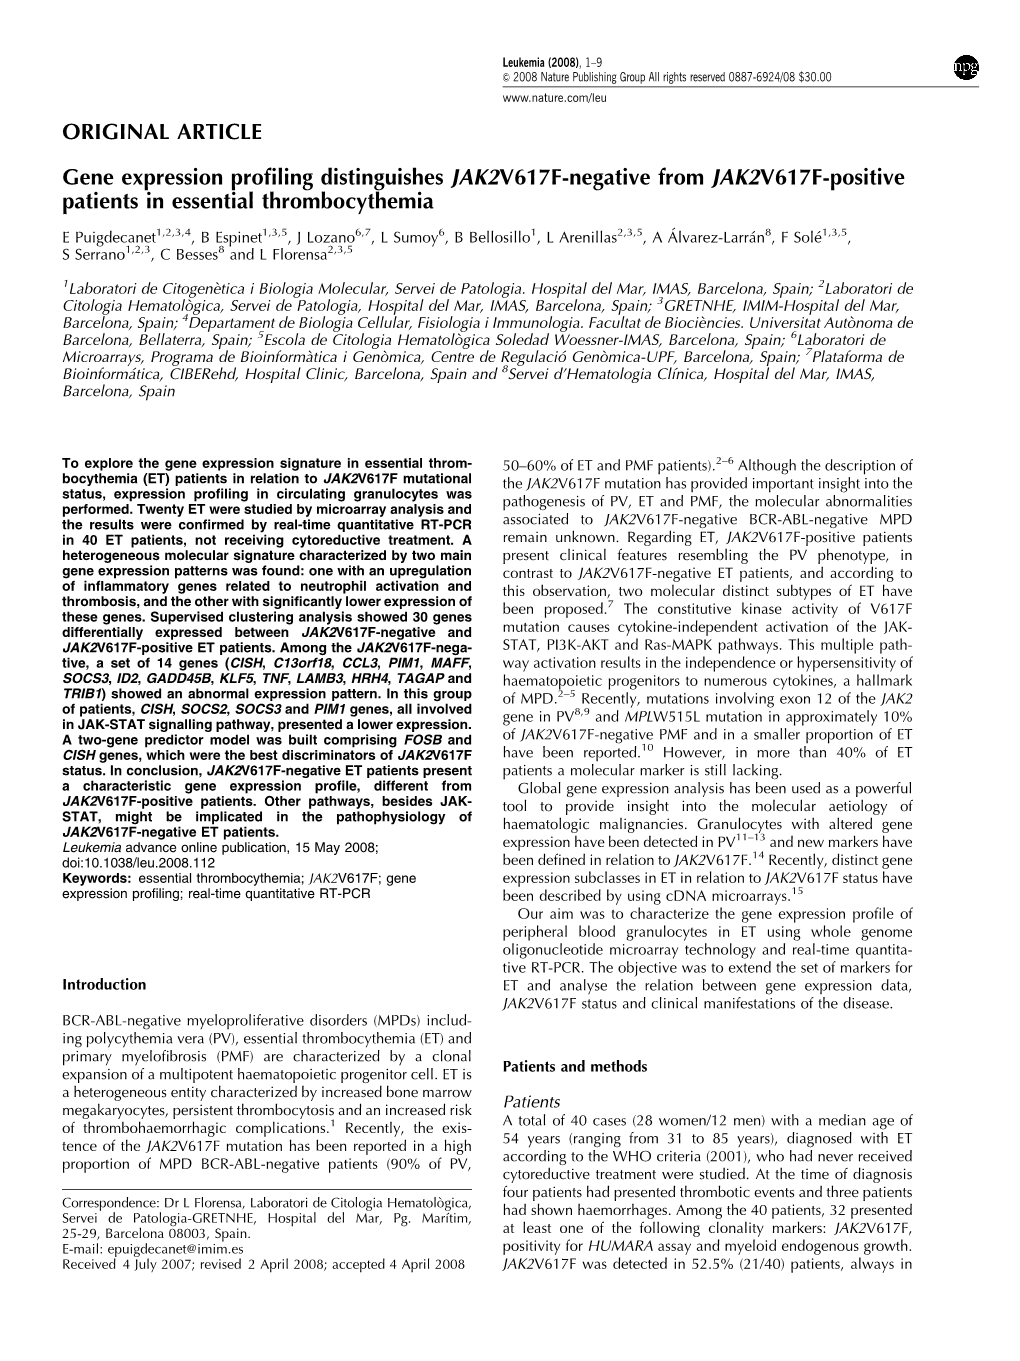 ORIGINAL ARTICLE Gene Expression Profiling Distinguishes JAK2V617F